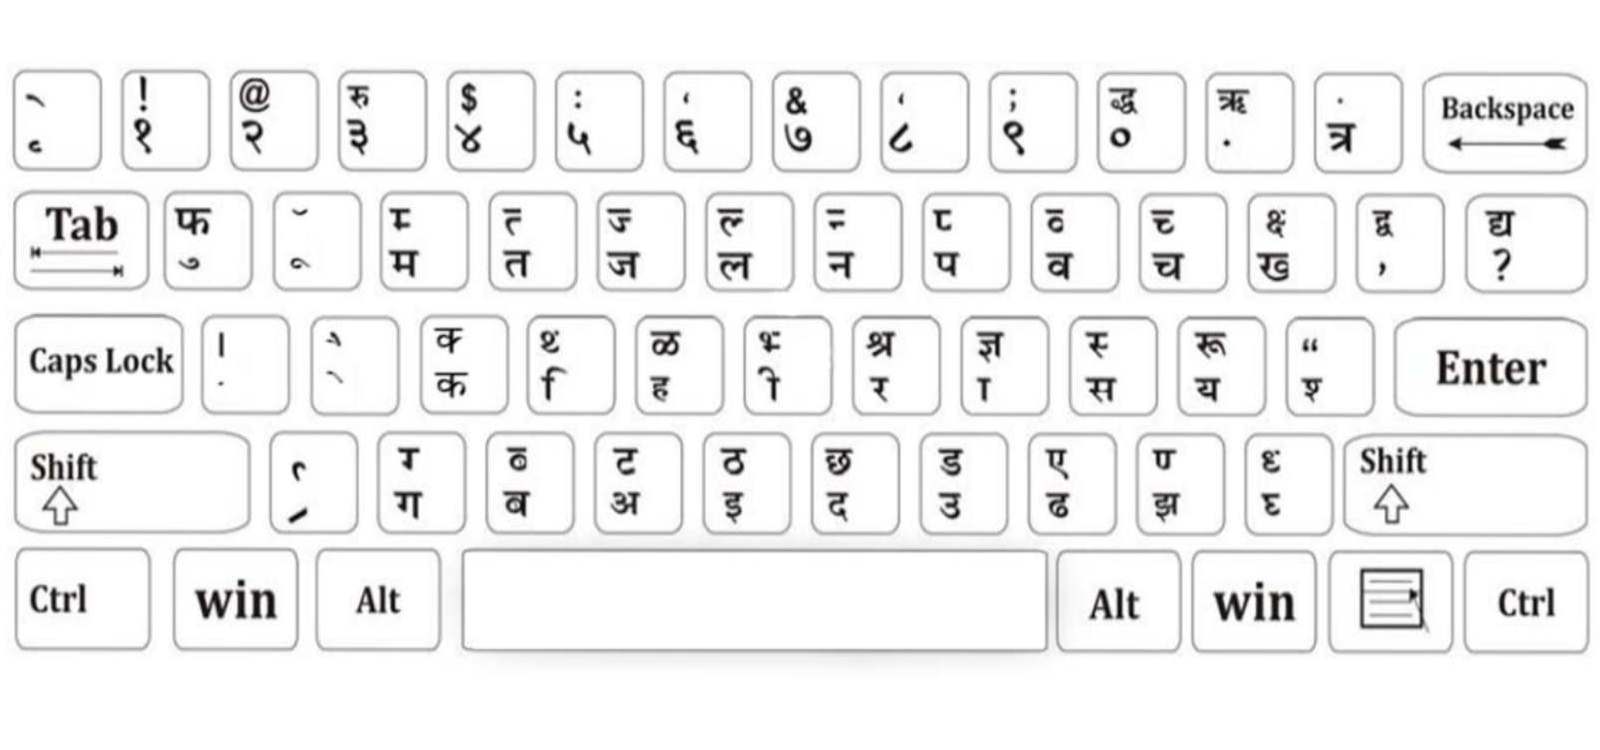 hindi typing tutor free download